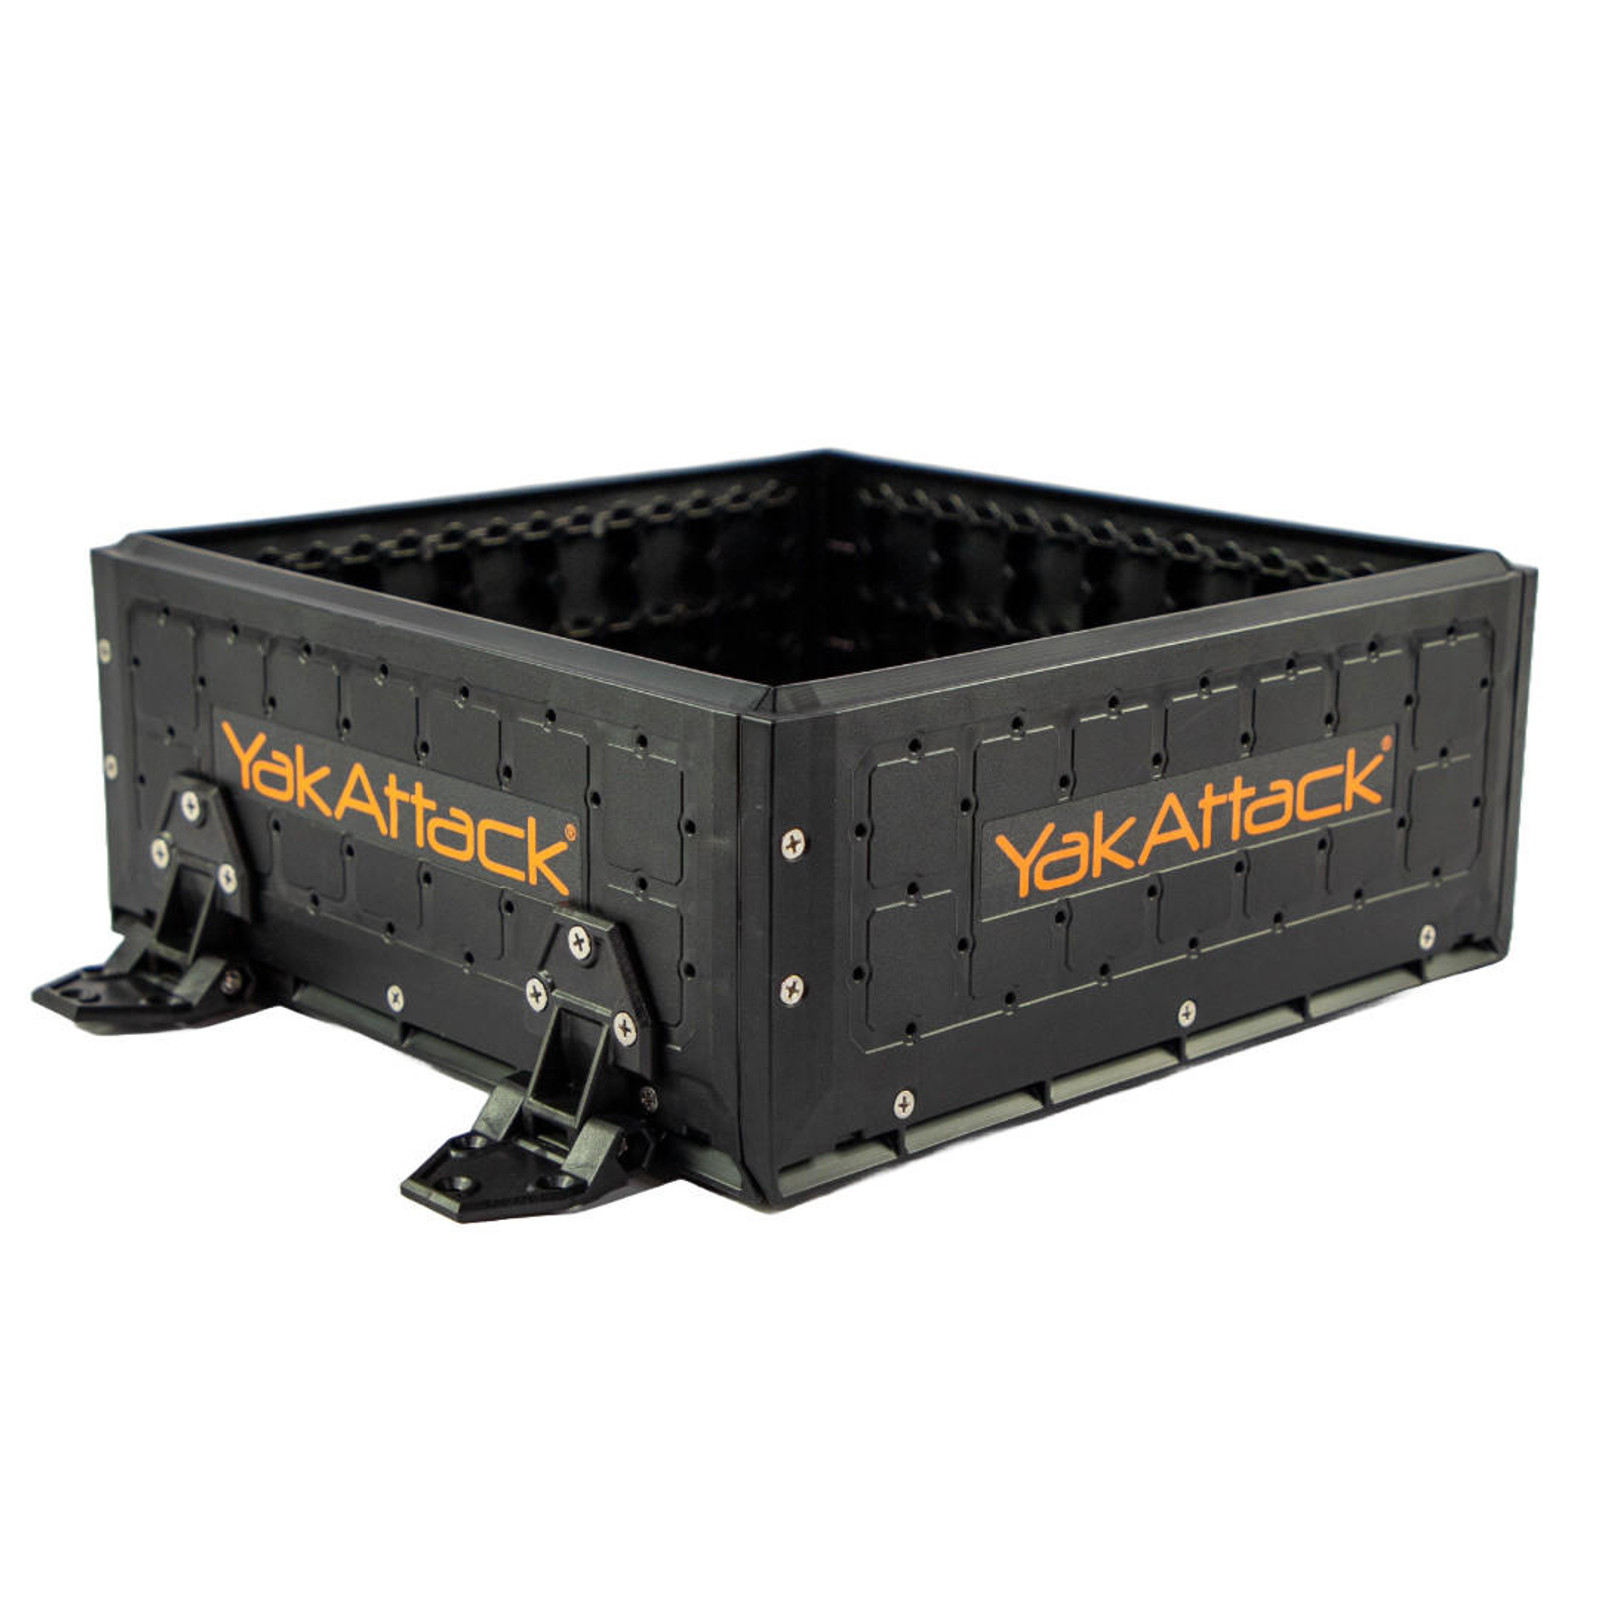  13x13 ShortStak Upgrade Kit for BlackPak Pro, Black 